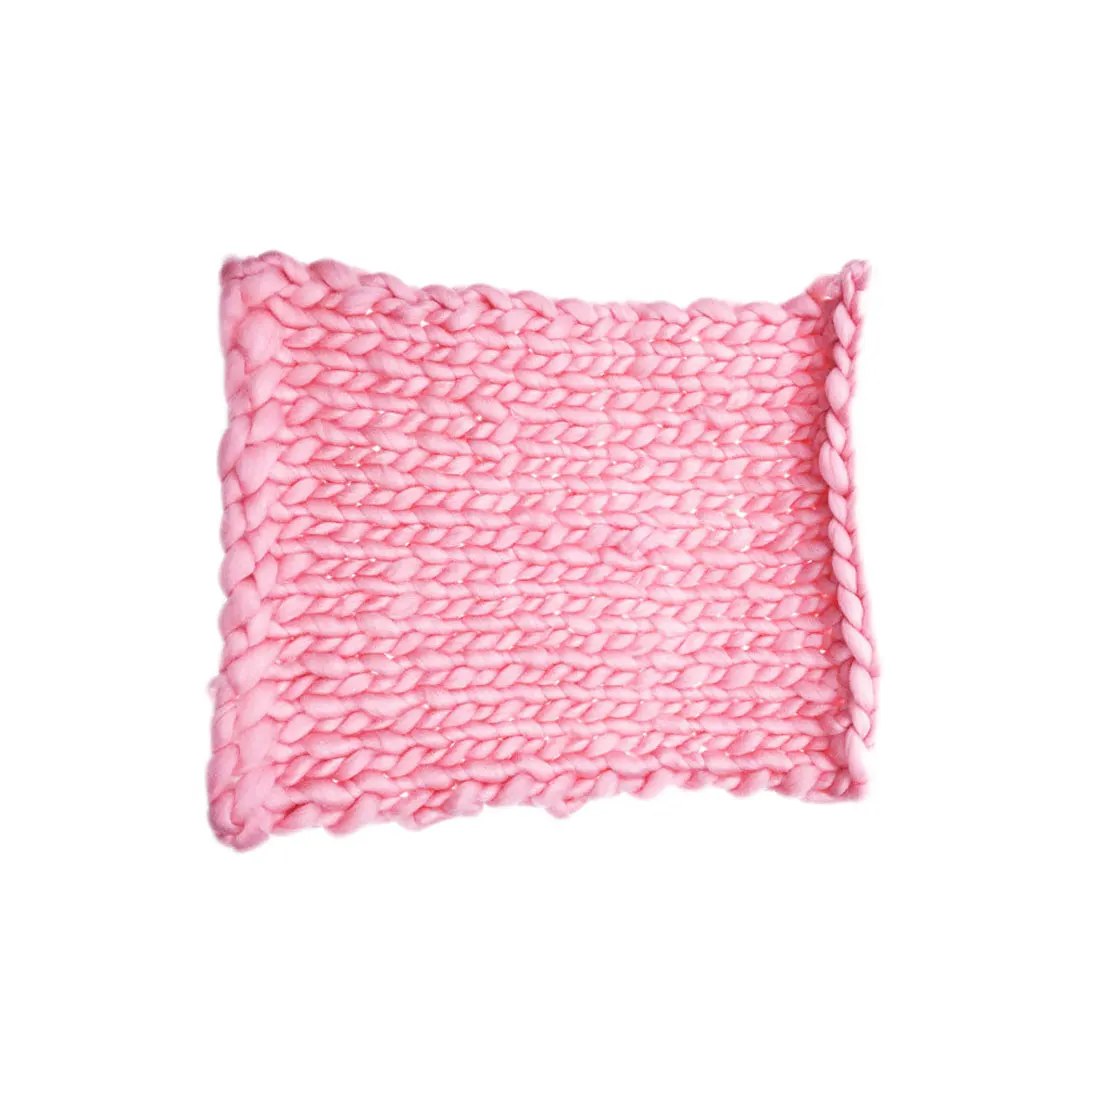 45 см X 50 см новорожденный младенец покрывало для фото искусственный мех ковер одеяло s плюшевые реквизиты для фона фотографии корзина наполнитель - Цвет: pink45cmX50cm